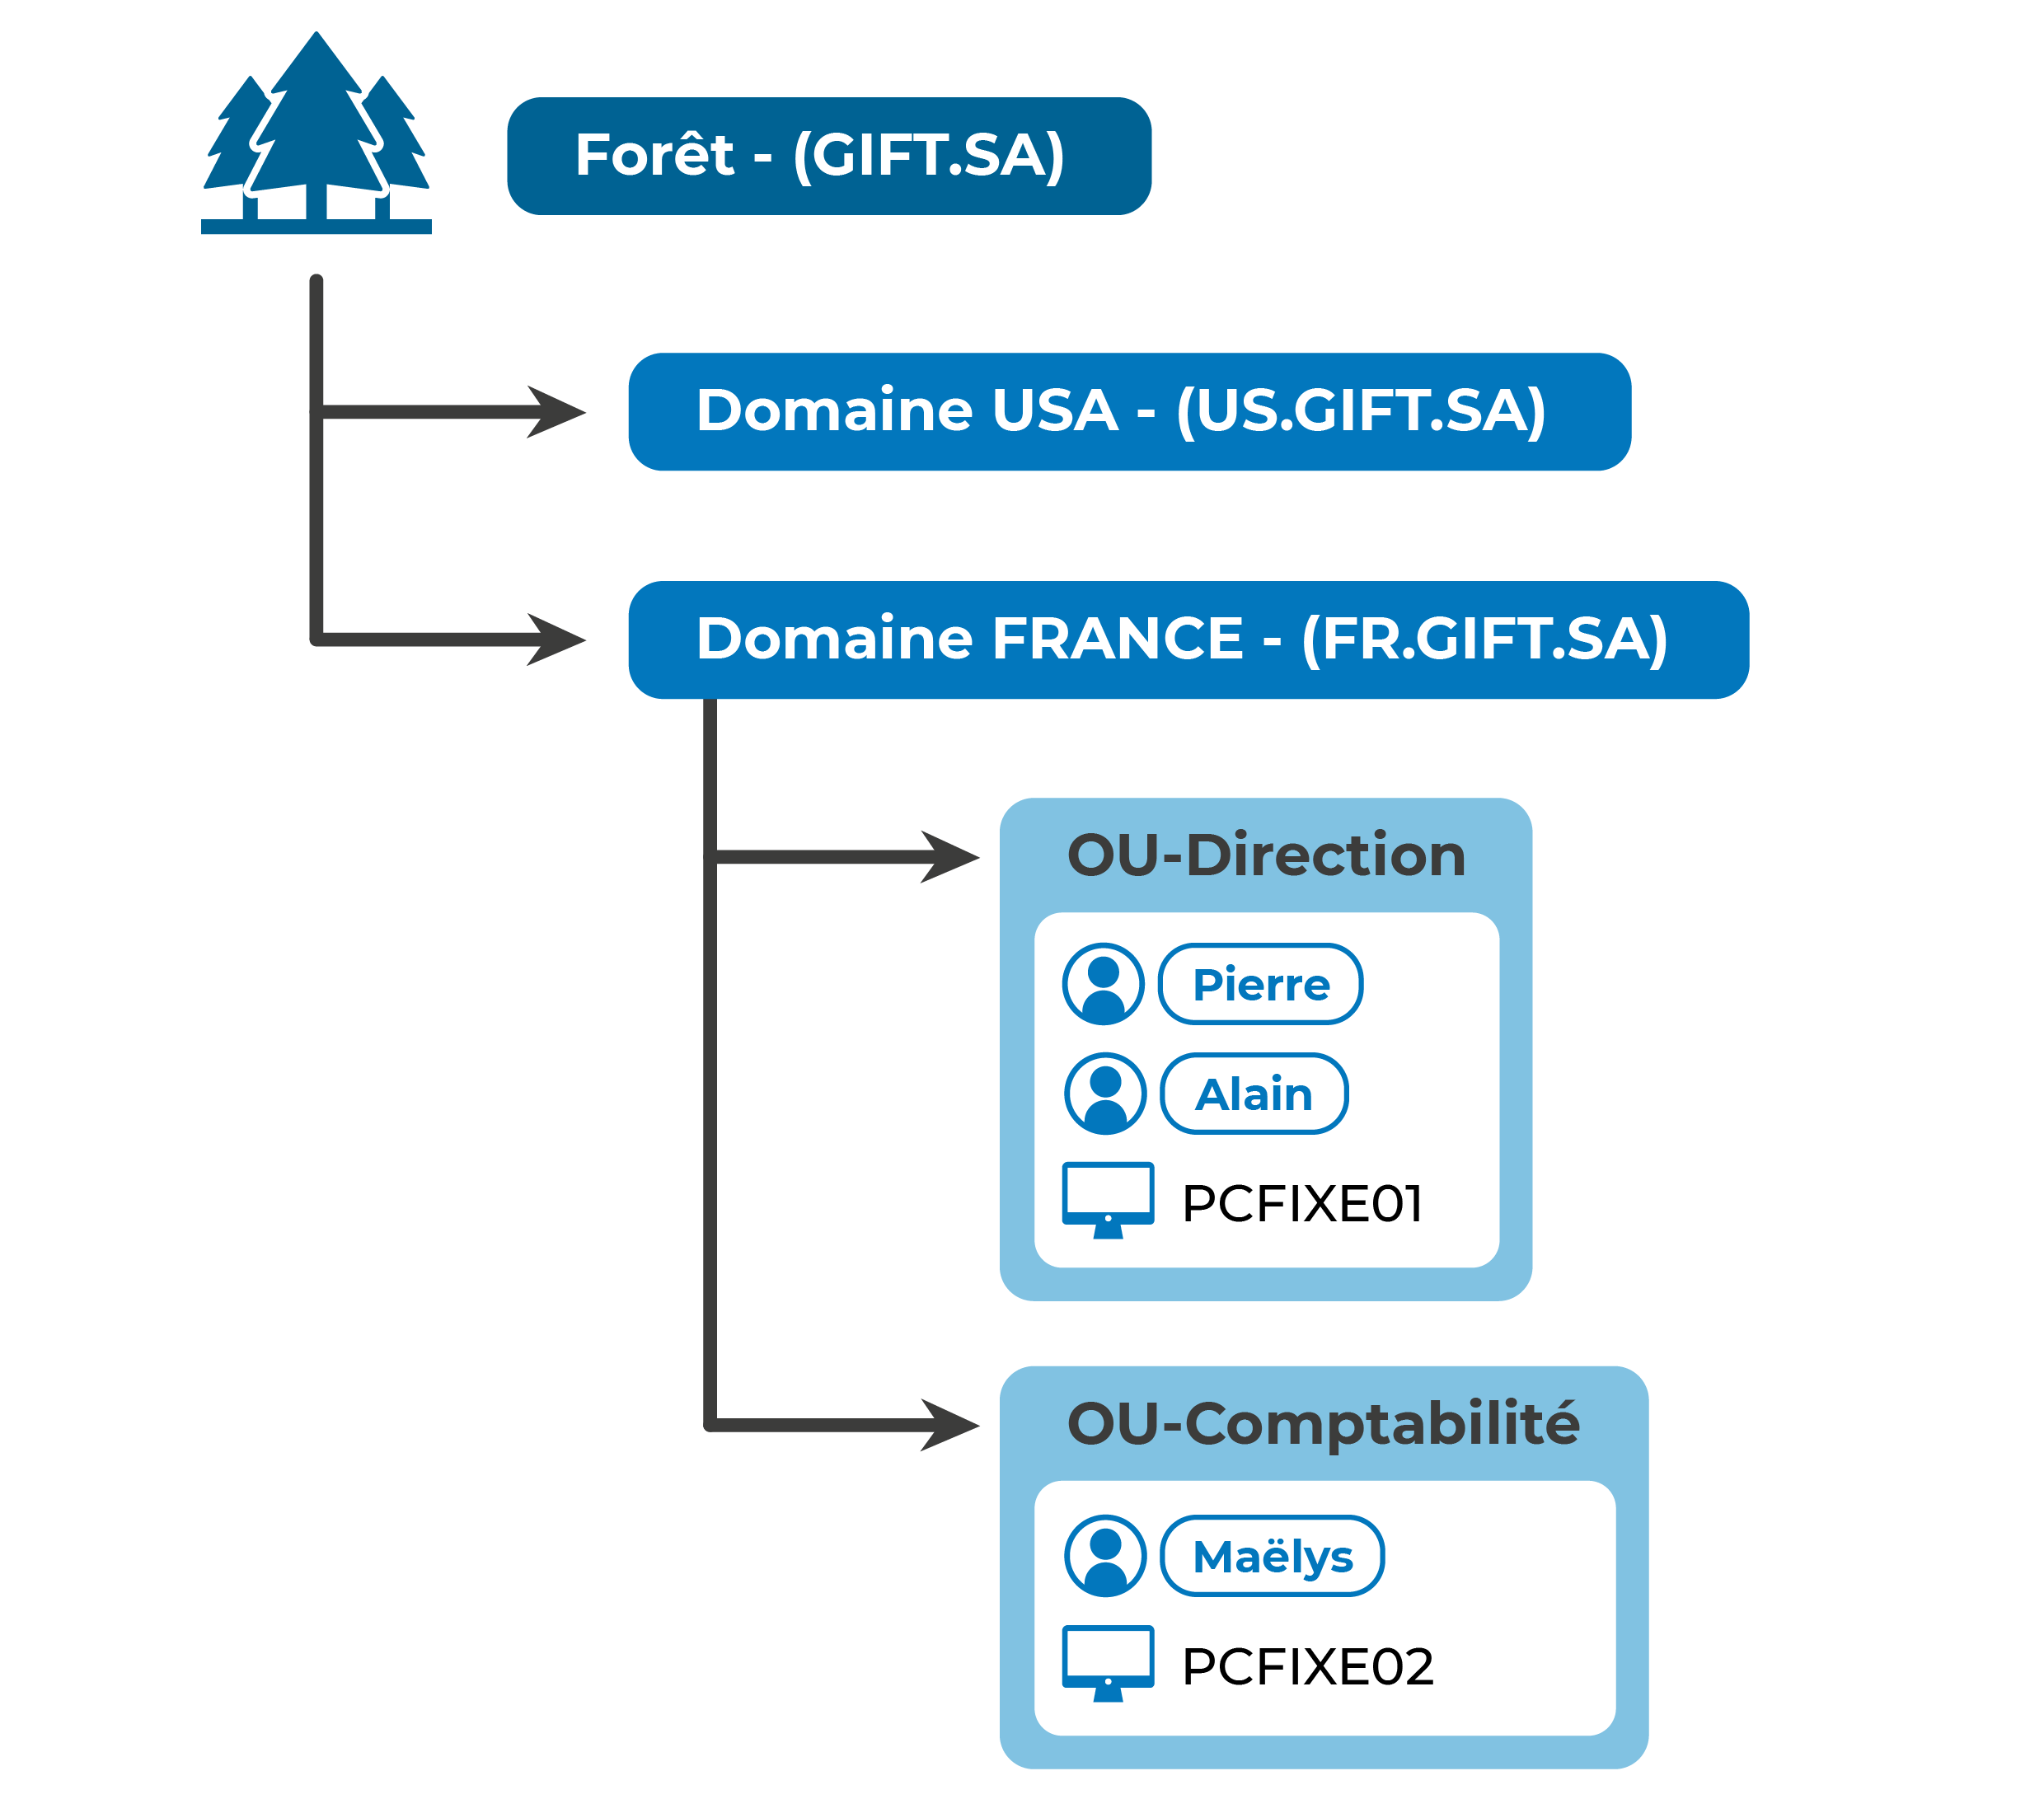 Organigramme représentant la Forêt (Gift SA) contenant dans l'ordre : Arbre USA; Arbre France: OU-Direction: Pierre, Alain, PCFIXE01; OU-Comptabilité: Maelys PCFIXE02.